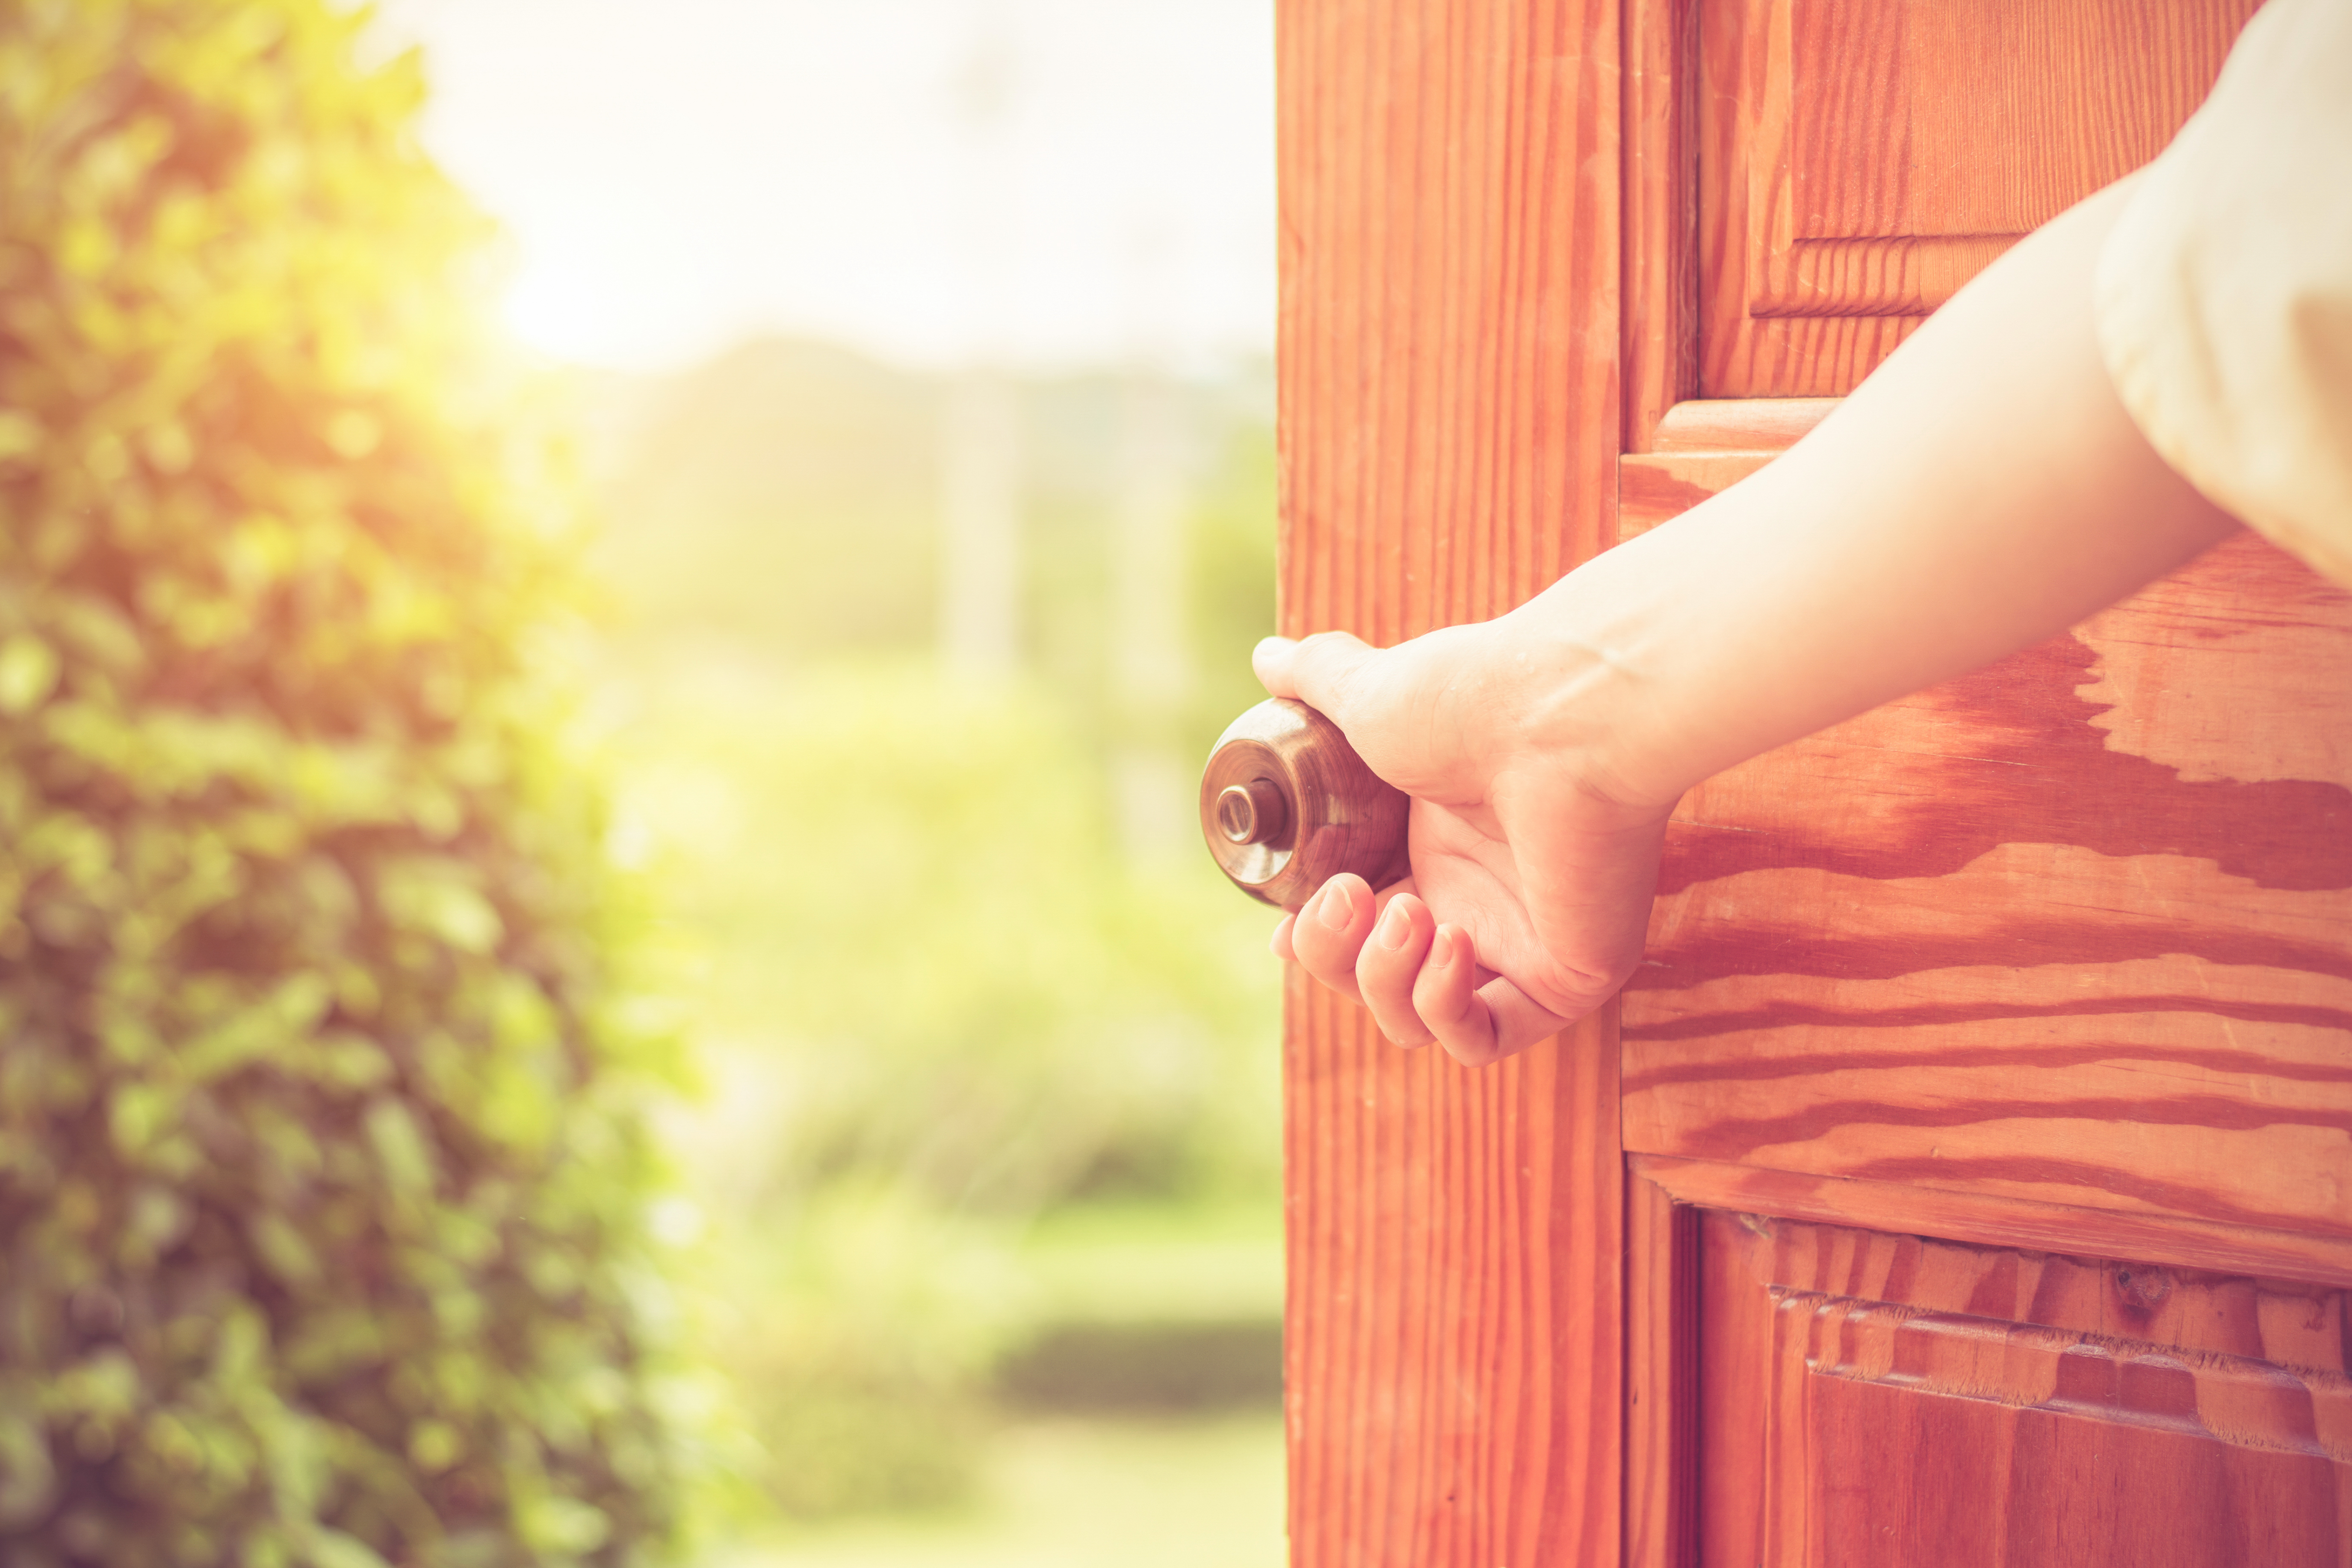 Women hand open door knob | Source: Shutterstock